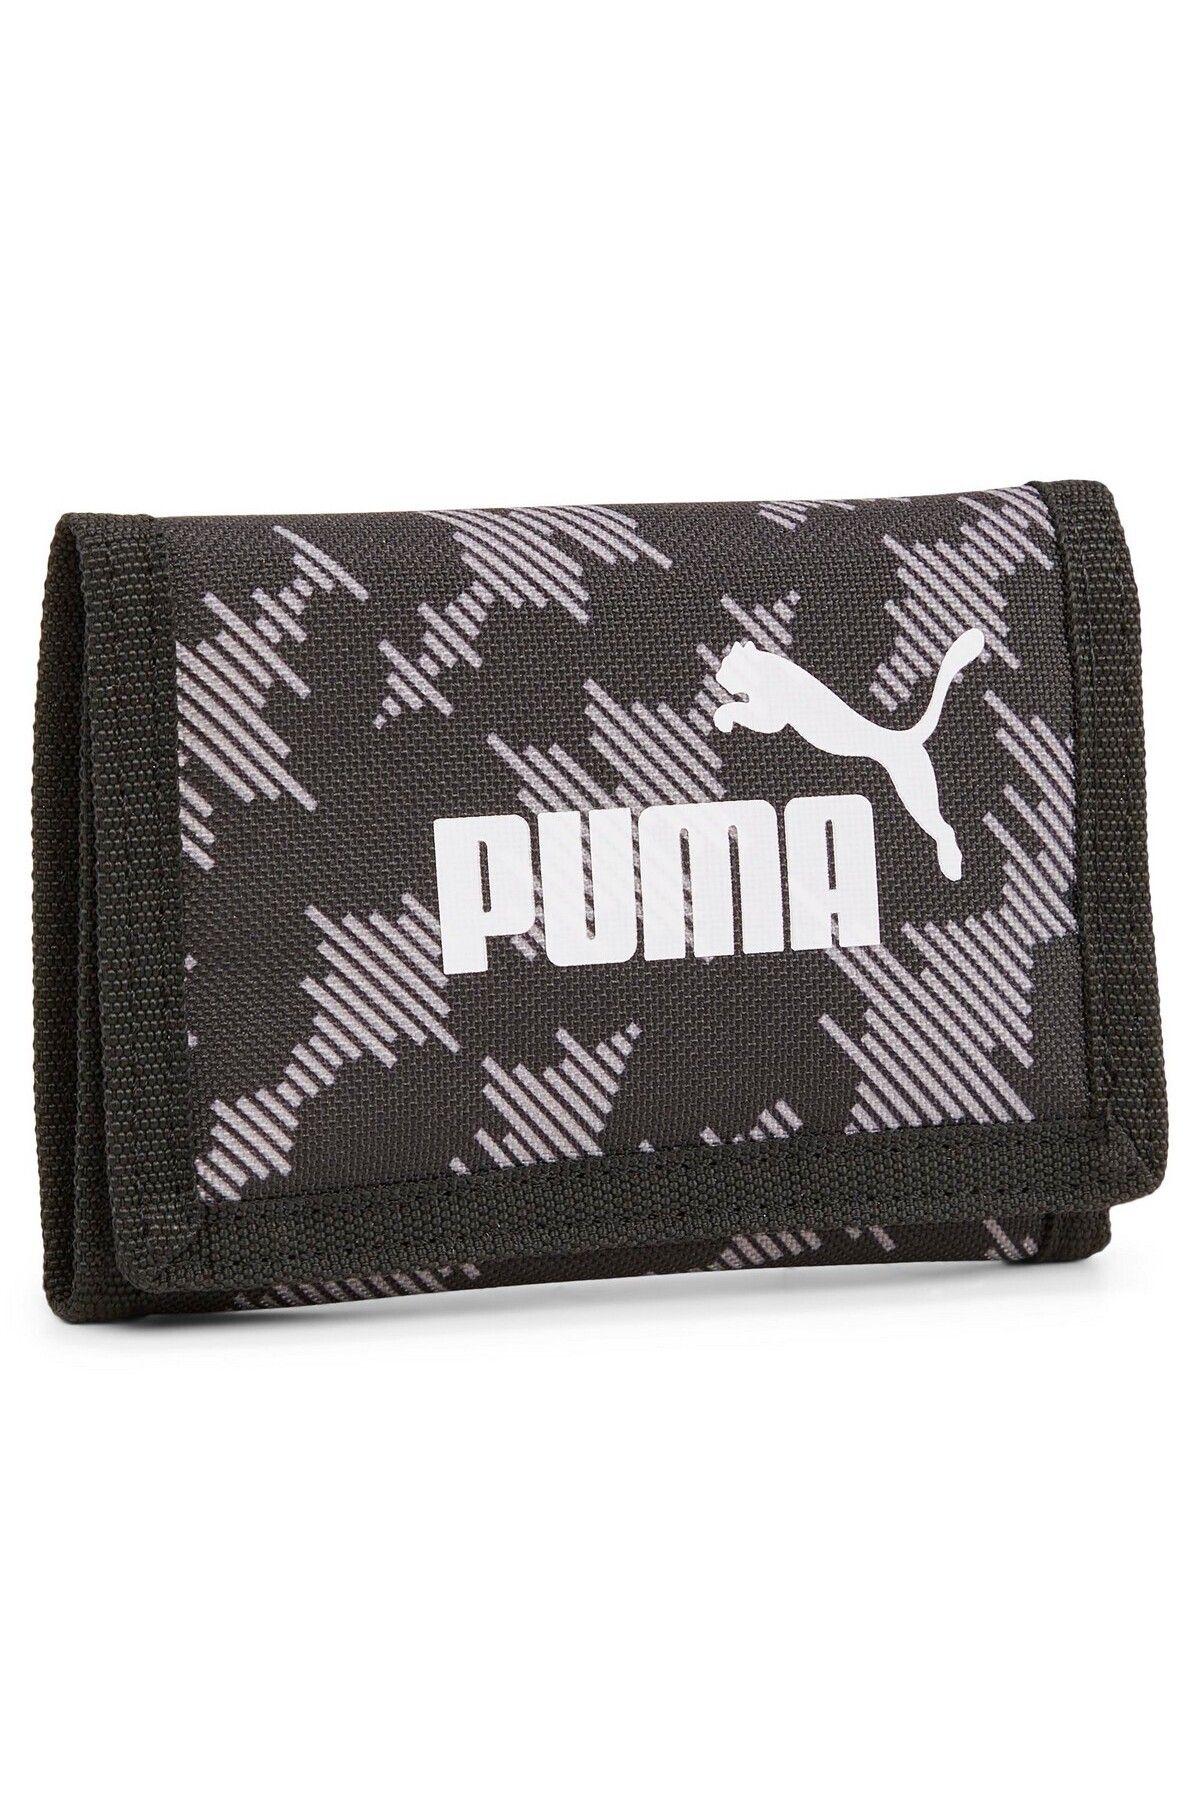 Puma 05436401 Phase Aop Wallet Unisex Cüzdan